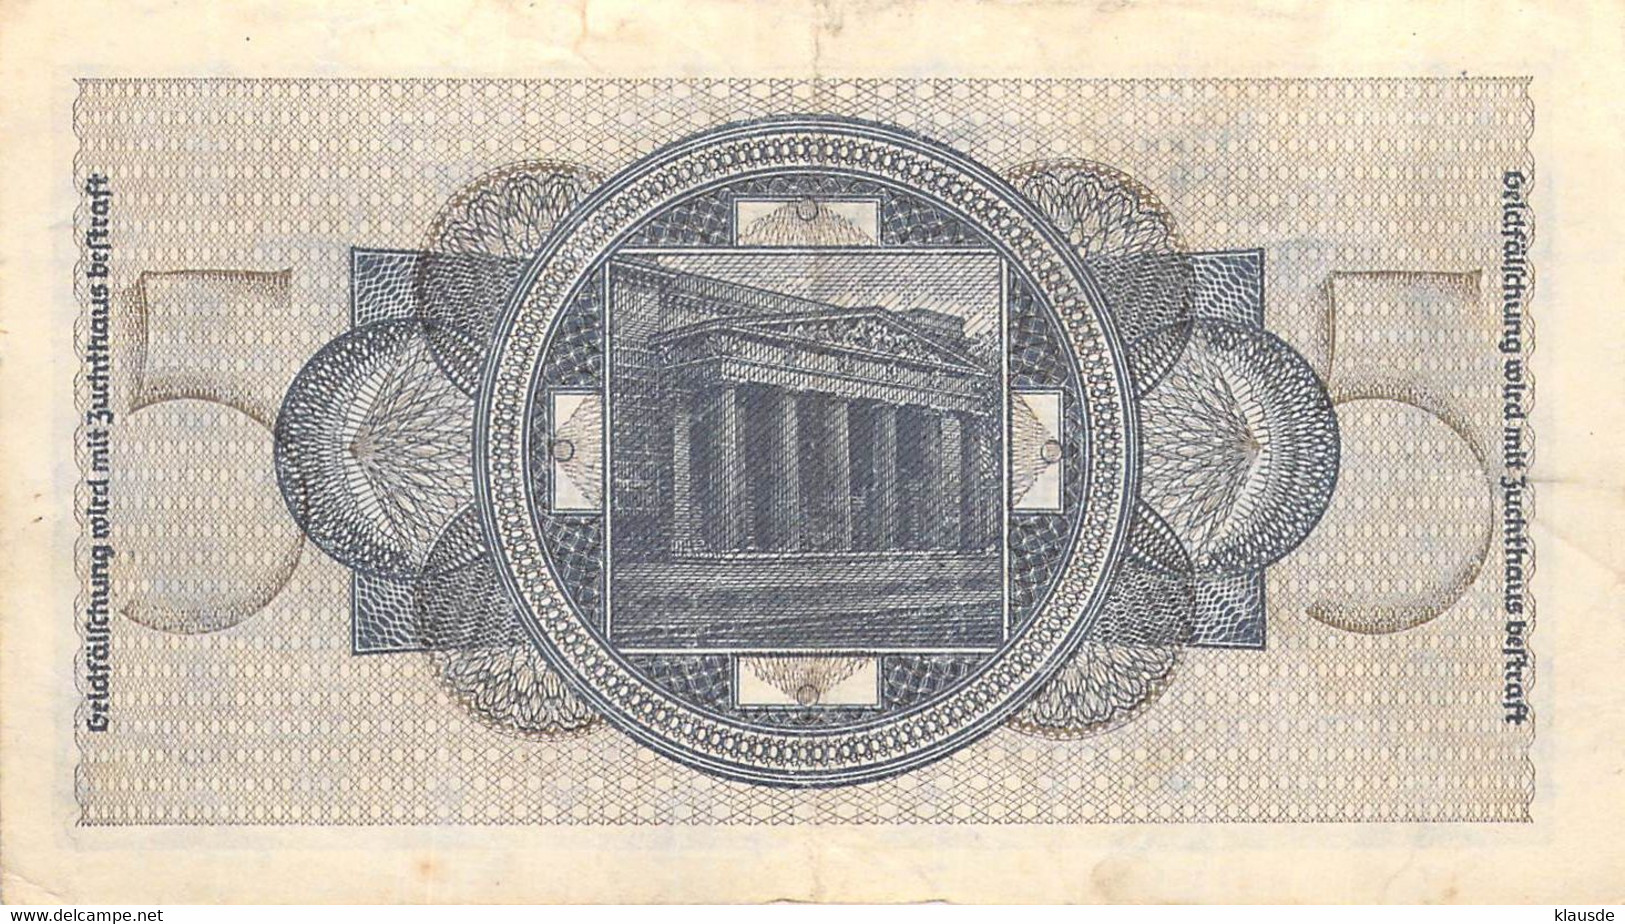 5 Mark Reichsbanknote UNC (I) Ohne Datum Deutsche Besetzung - 2° Guerra Mondiale